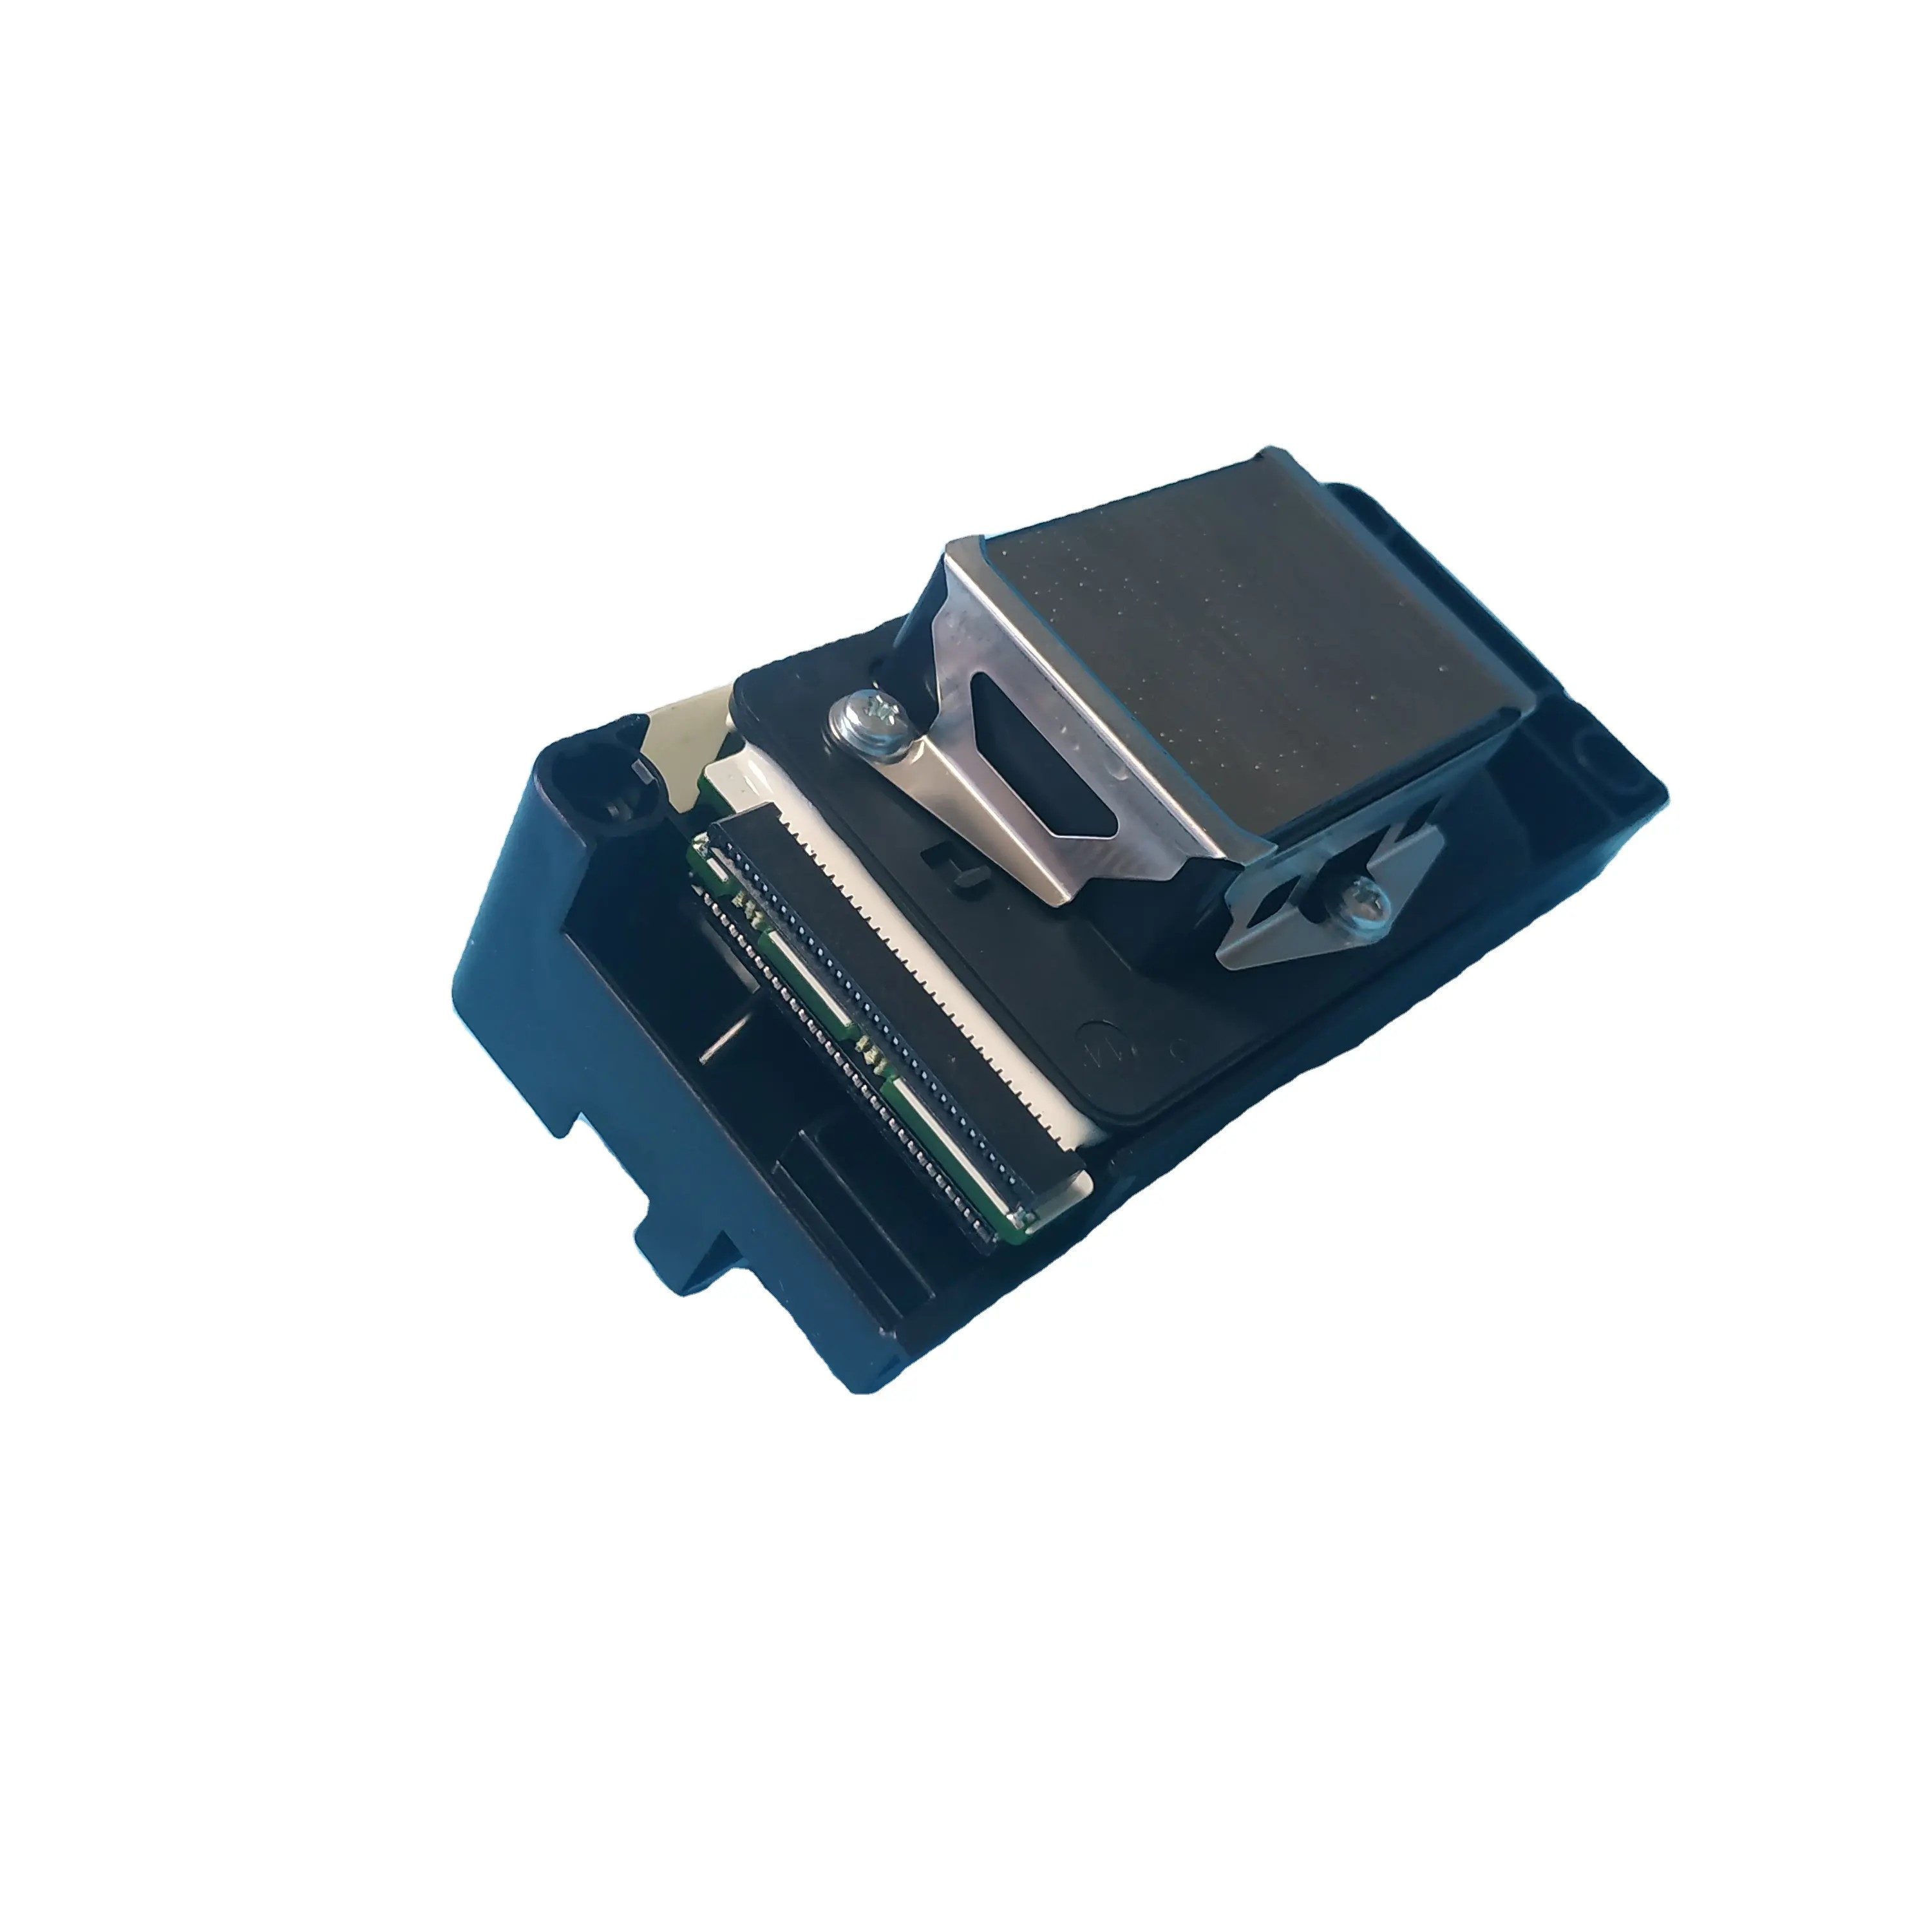 Entsperrter DX5 F160010 Grauer Druckkopf für Epson 4800 7800 9800 Drucker/DX5 Druckkopf auf Wasserbasis für Mutoh RJ900C